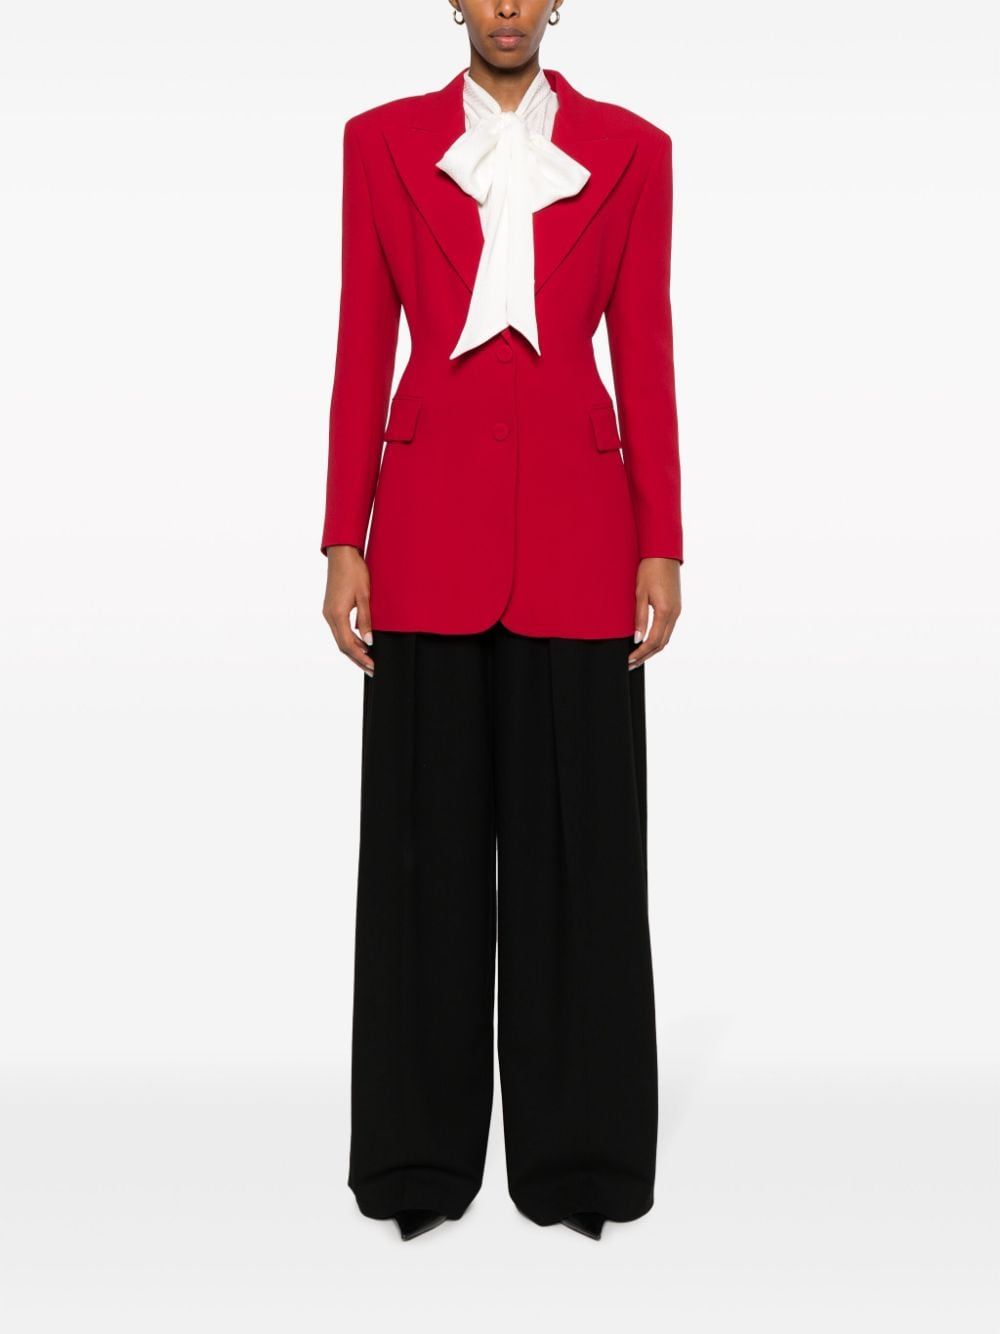 Women's FW23 Jacket in Elegant 91557 Color